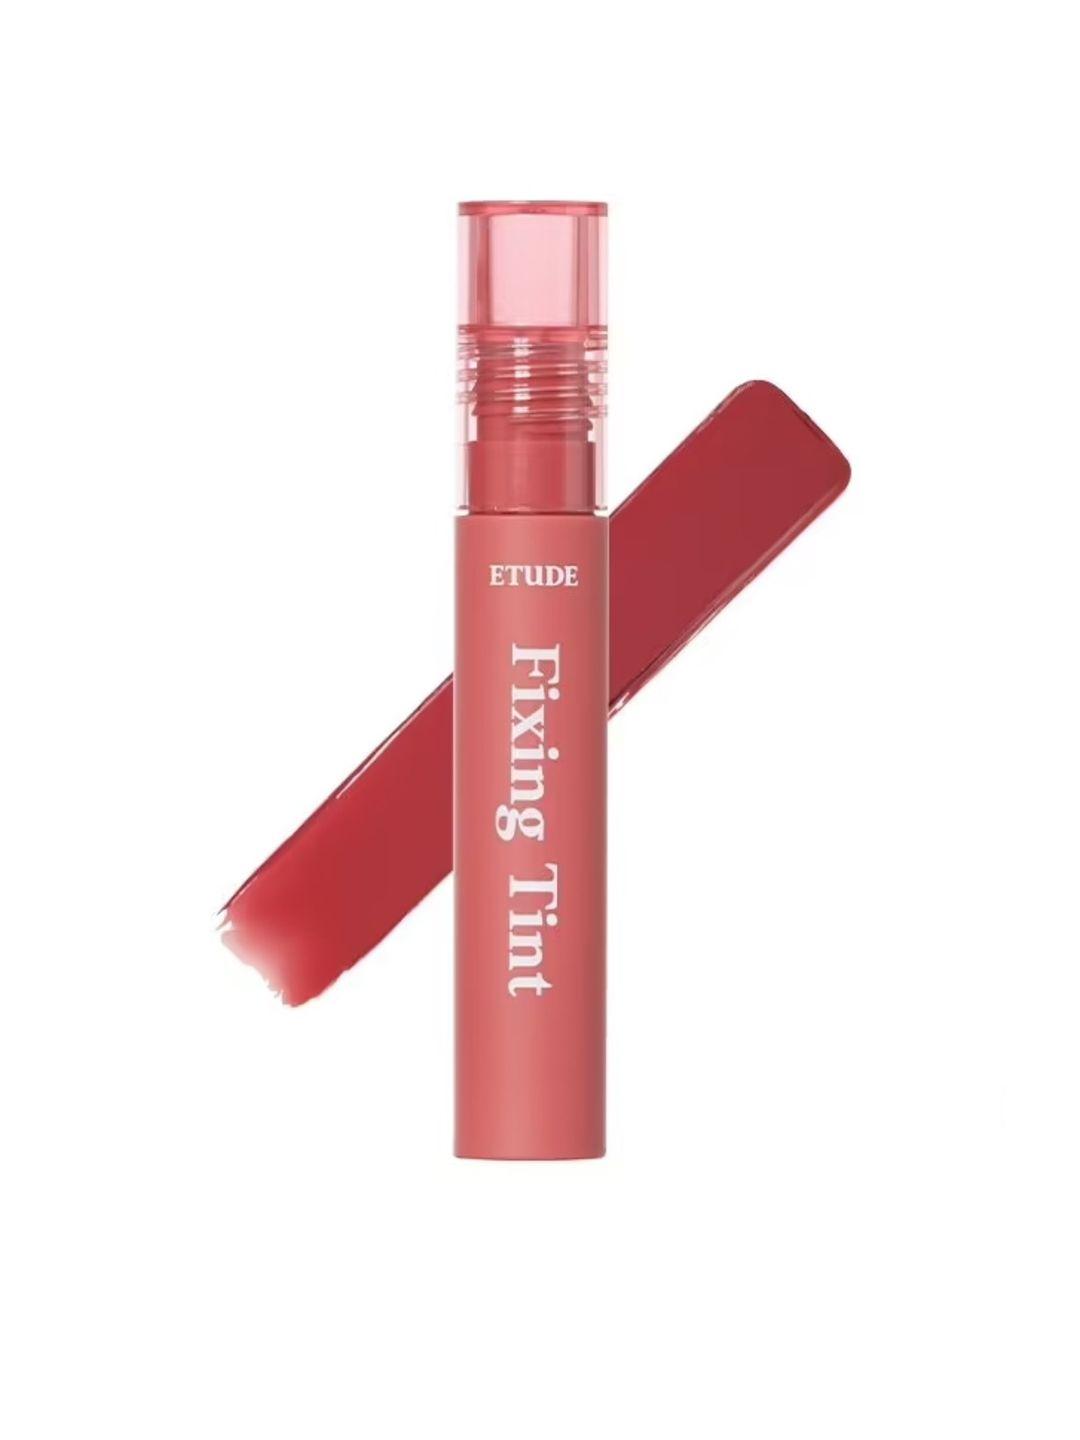 etude-hydrating-fixing-tint-lipstick-4-g---analog-rose-01